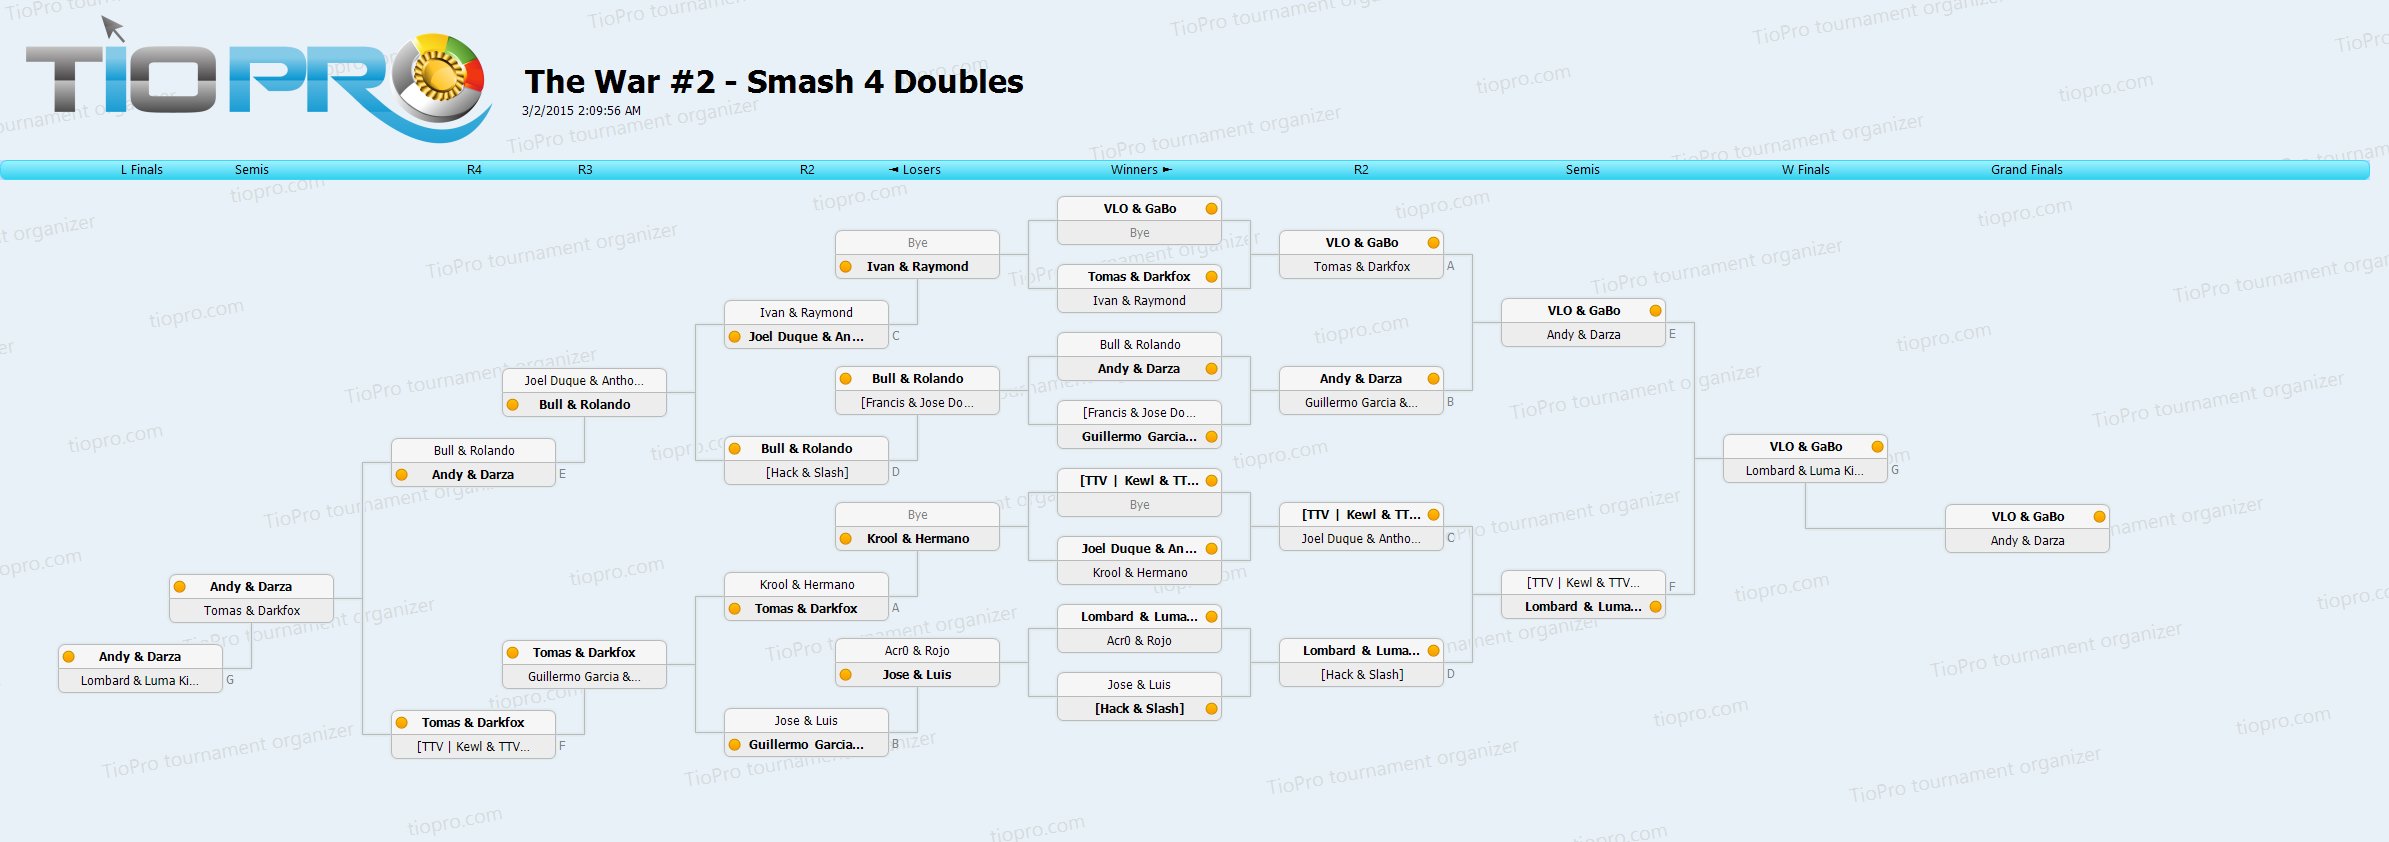 The War #2 - Smash 4  Doubles